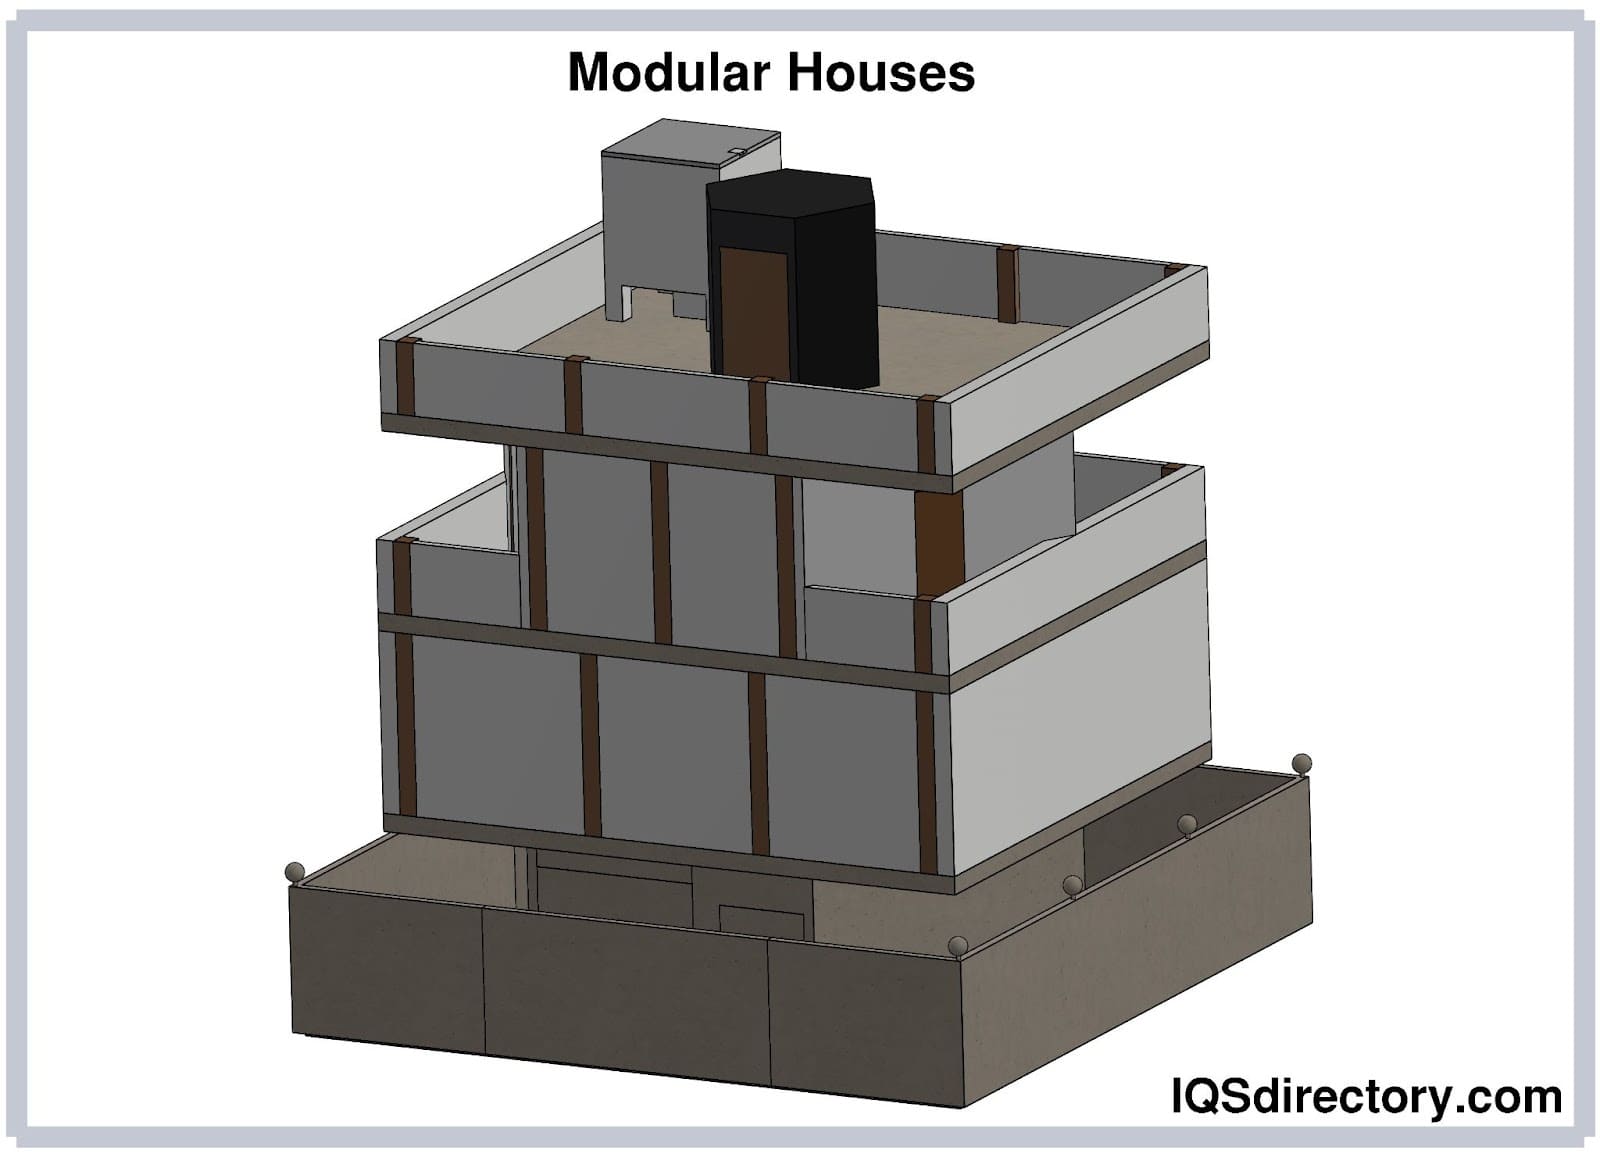 Modular Houses